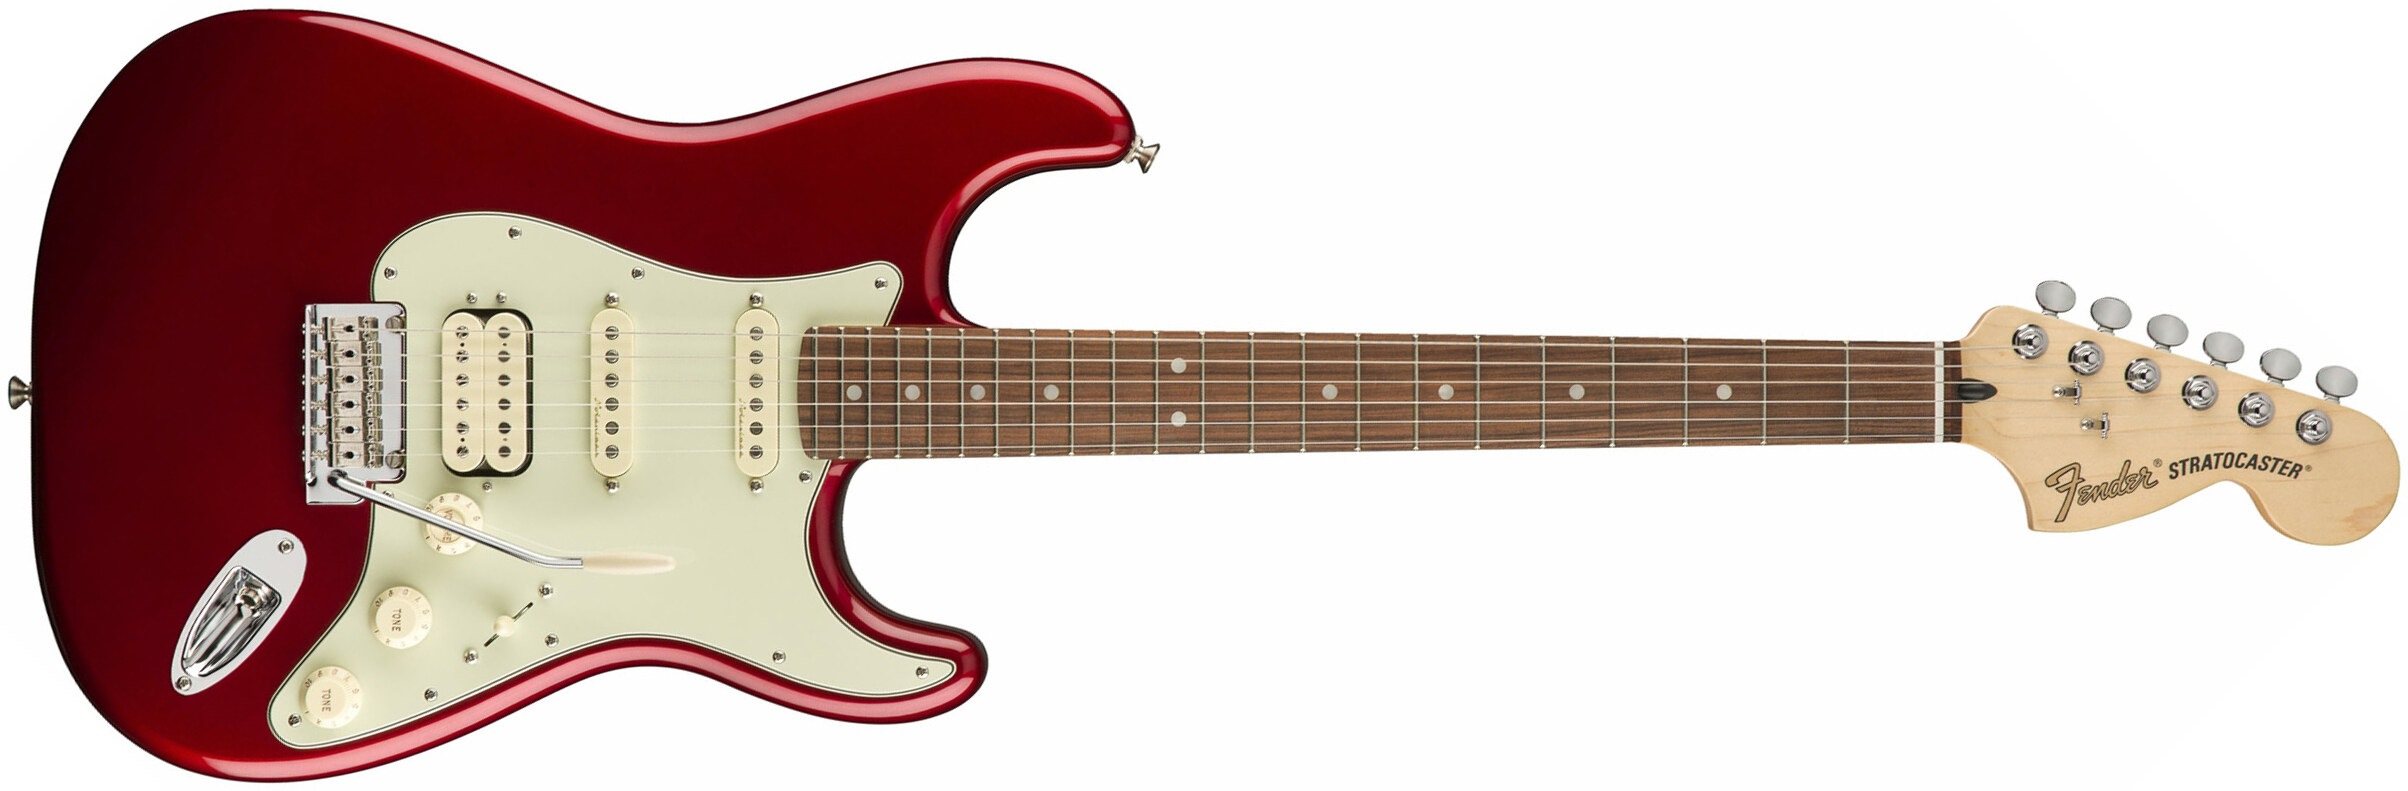 Fender Strat Deluxe Hss Mex Pf 2017 - Candy Apple Red - Elektrische gitaar in Str-vorm - Main picture